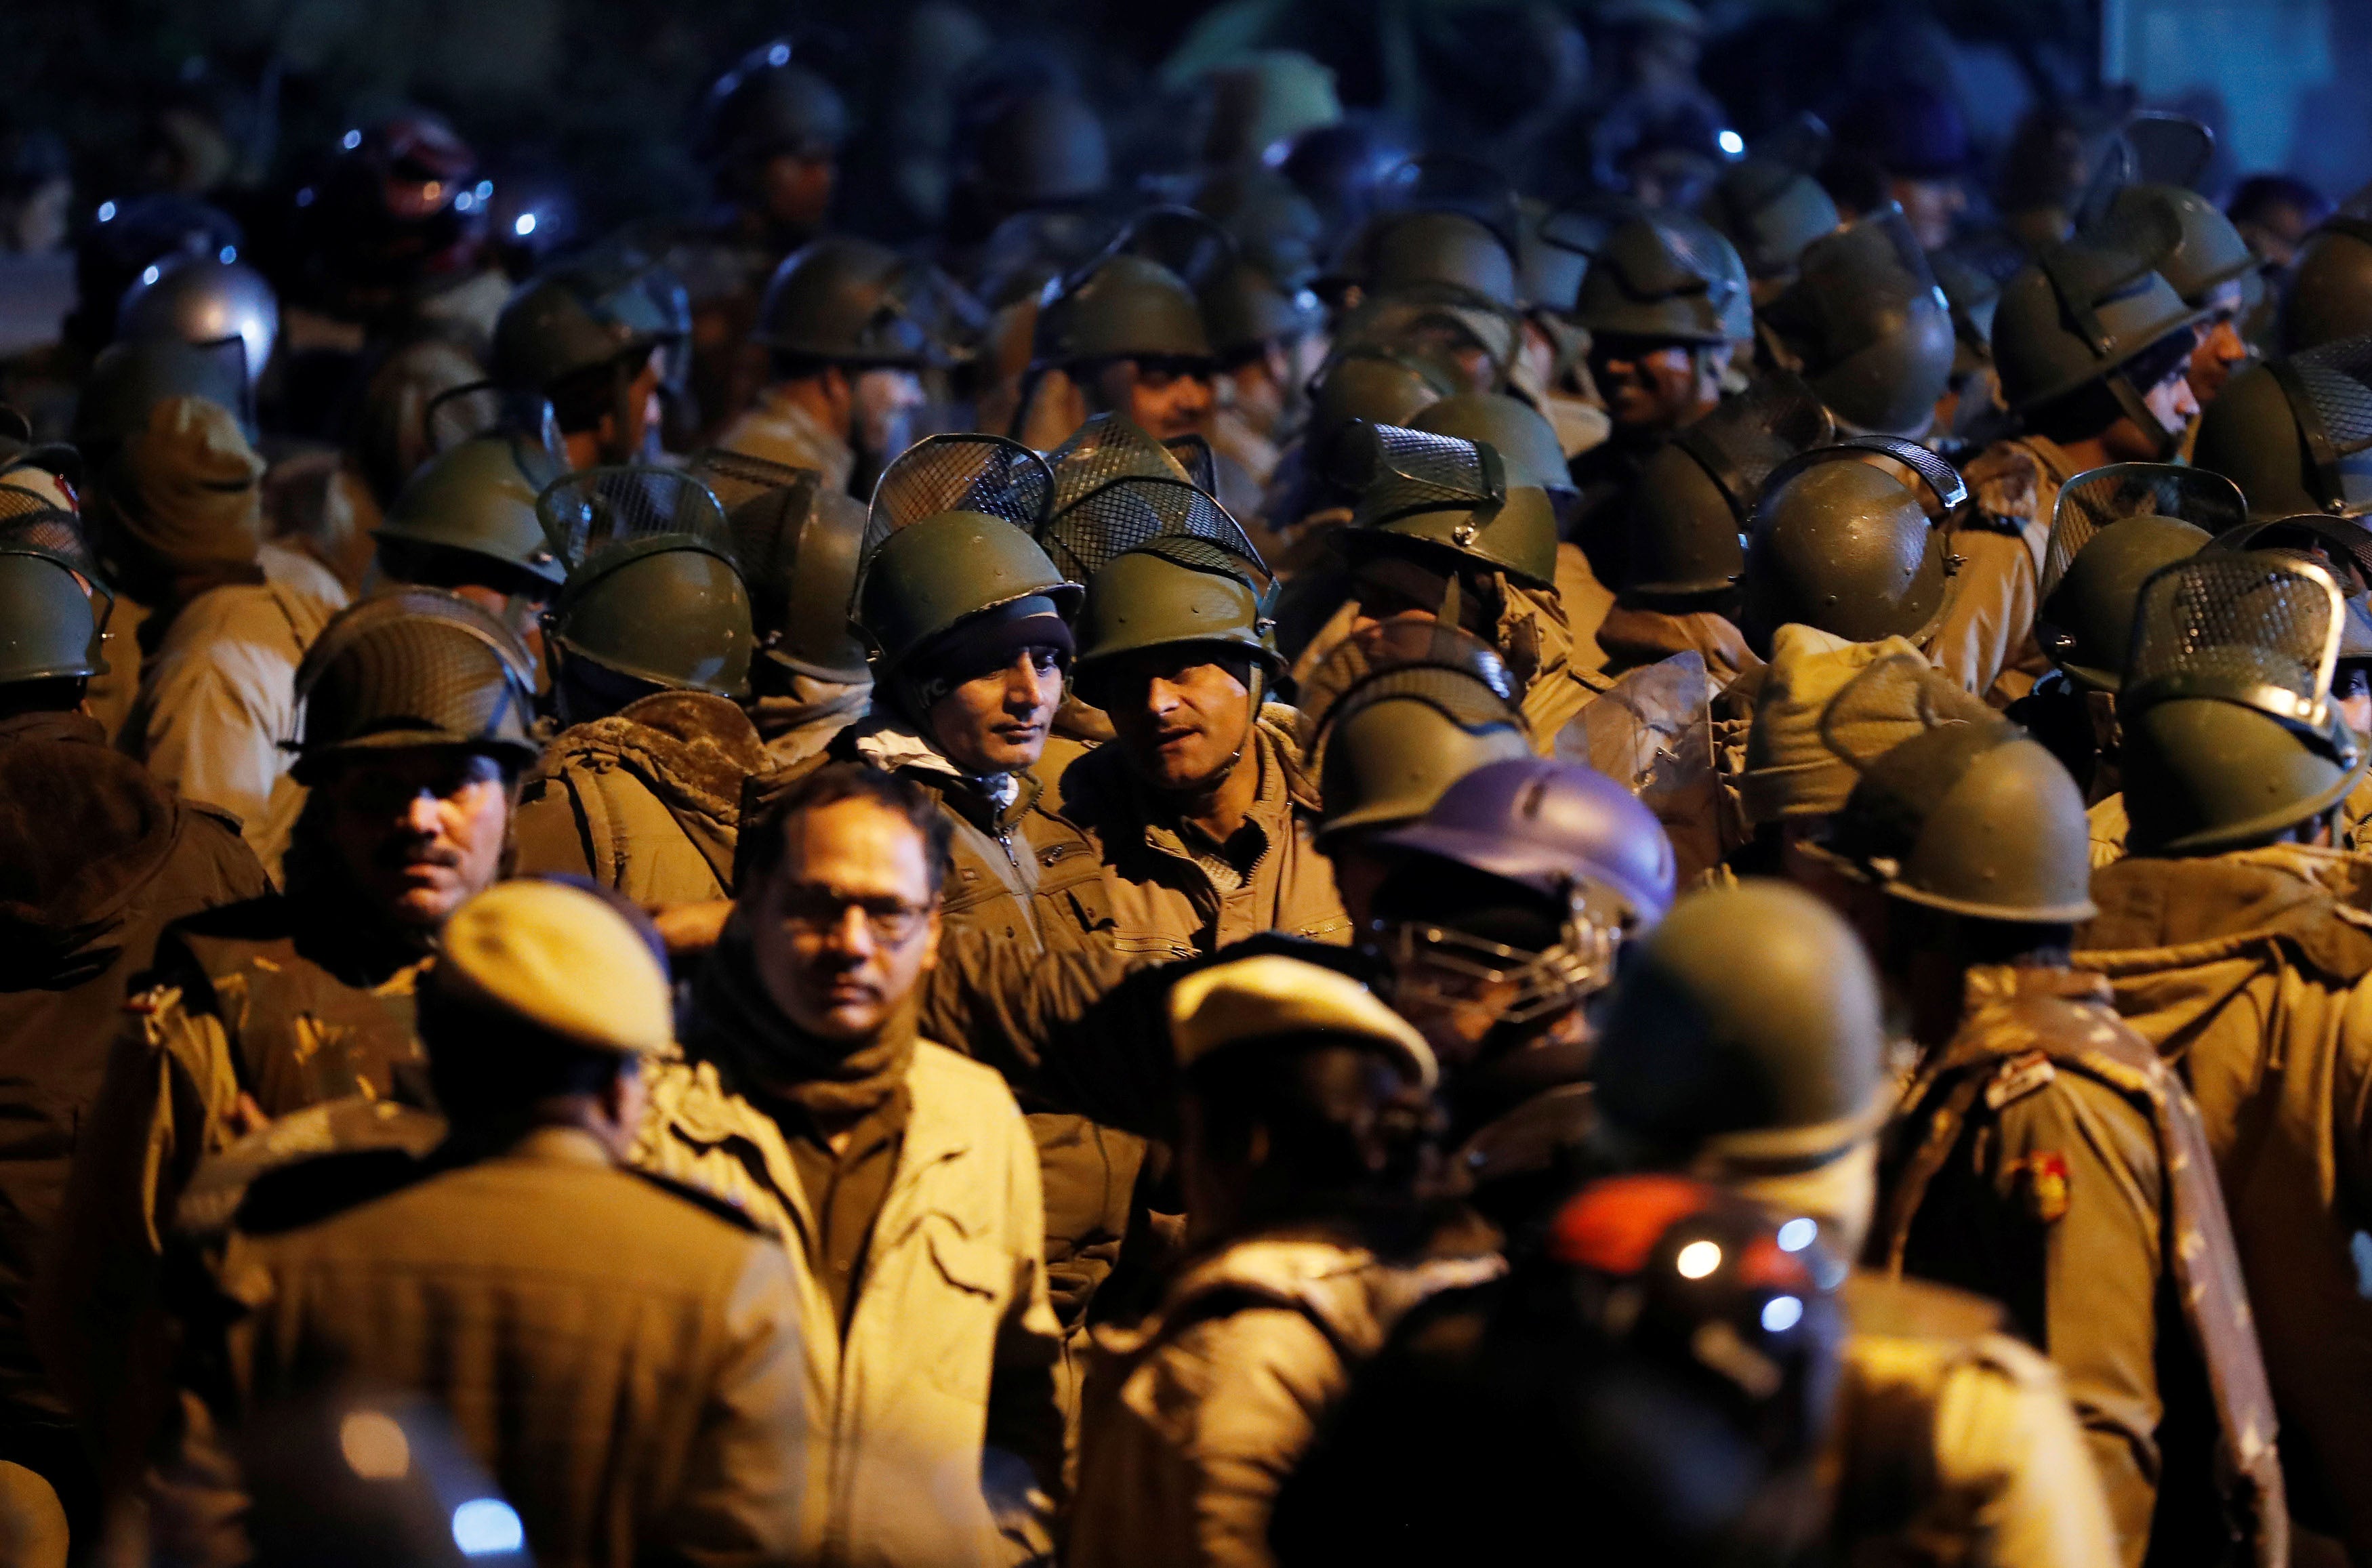 जवाहरलाल नेहरू विश्वविद्यालय कैंपस में हिंसा के बाद तैनात पुलिस, नई दिल्ली, भारत, 5 जनवरी, 2020. © 2020 रायटर्स/अदनान आबिदी